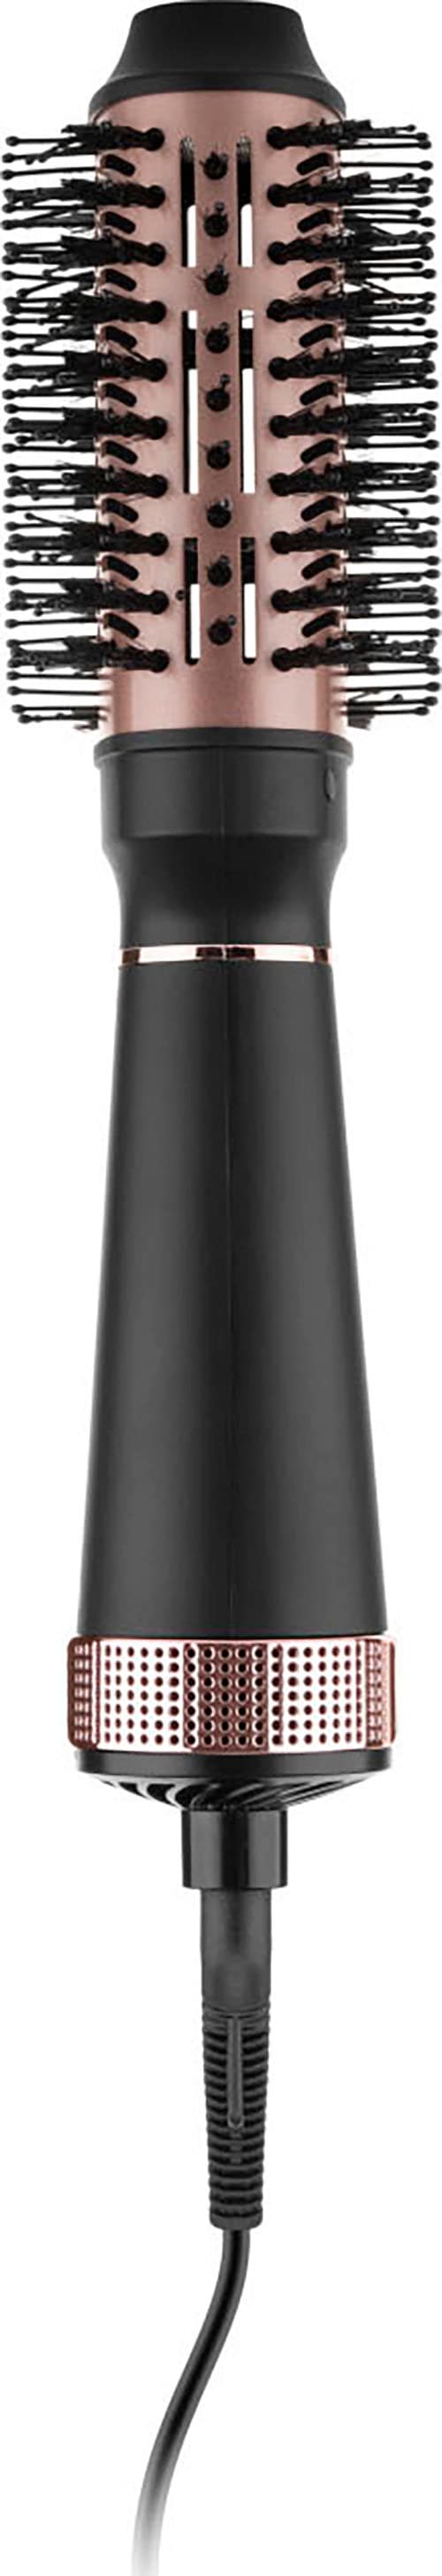 eta Warmluftbürste »Fenite Black Edition ETA932290000«, Kühle Spitze für  eine einfache und sichere Anwendung. | BAUR